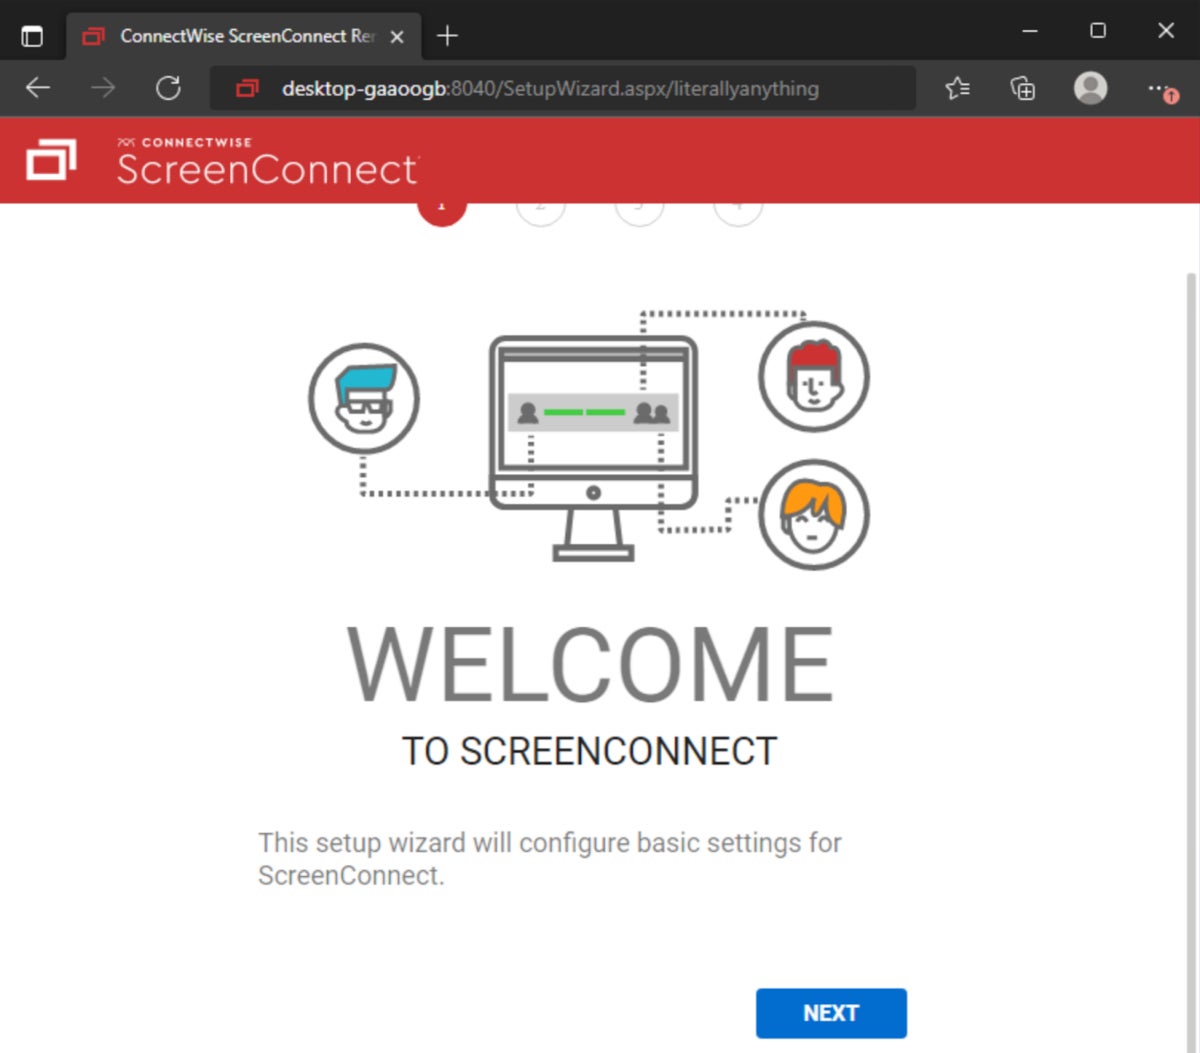 Acceso no autenticado al asistente de configuración de ScreenConnect.